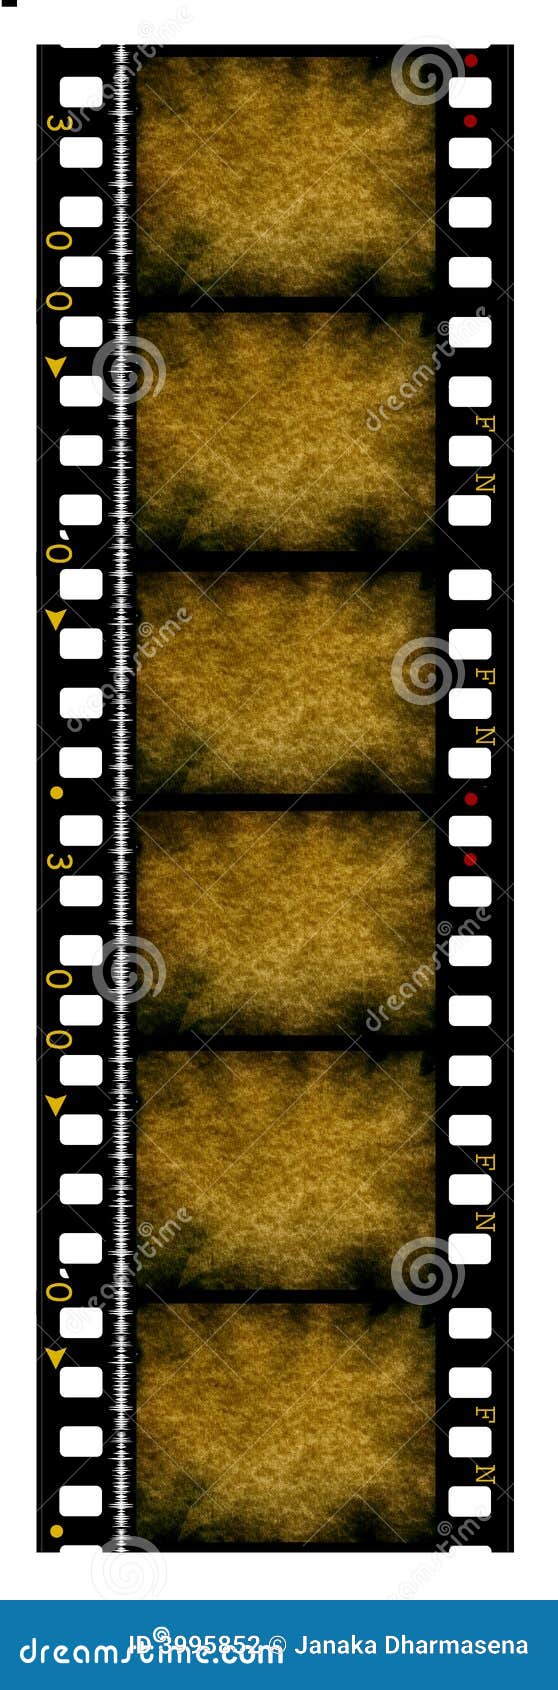 35 Mm Movie Film Reel Stock Illustrations – 354 35 Mm Movie Film Reel Stock  Illustrations, Vectors & Clipart - Dreamstime